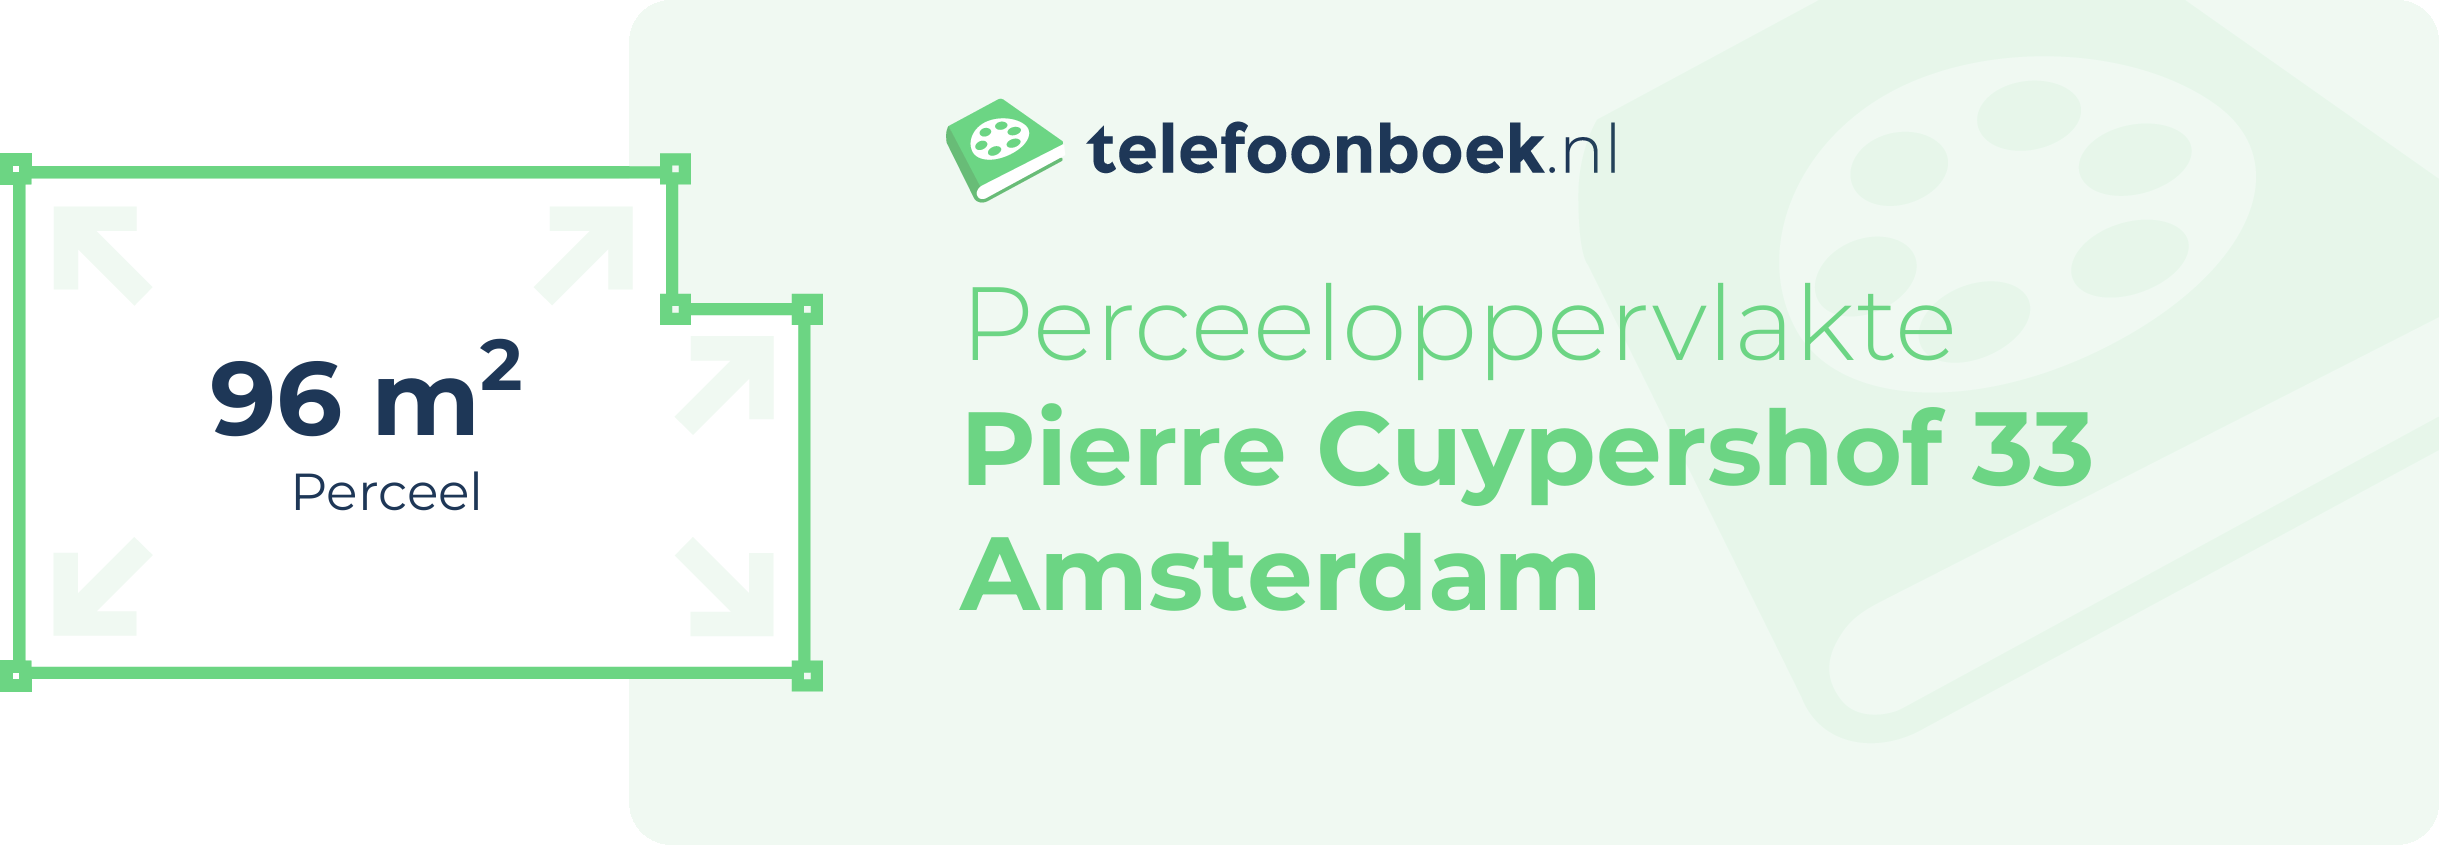 Perceeloppervlakte Pierre Cuypershof 33 Amsterdam